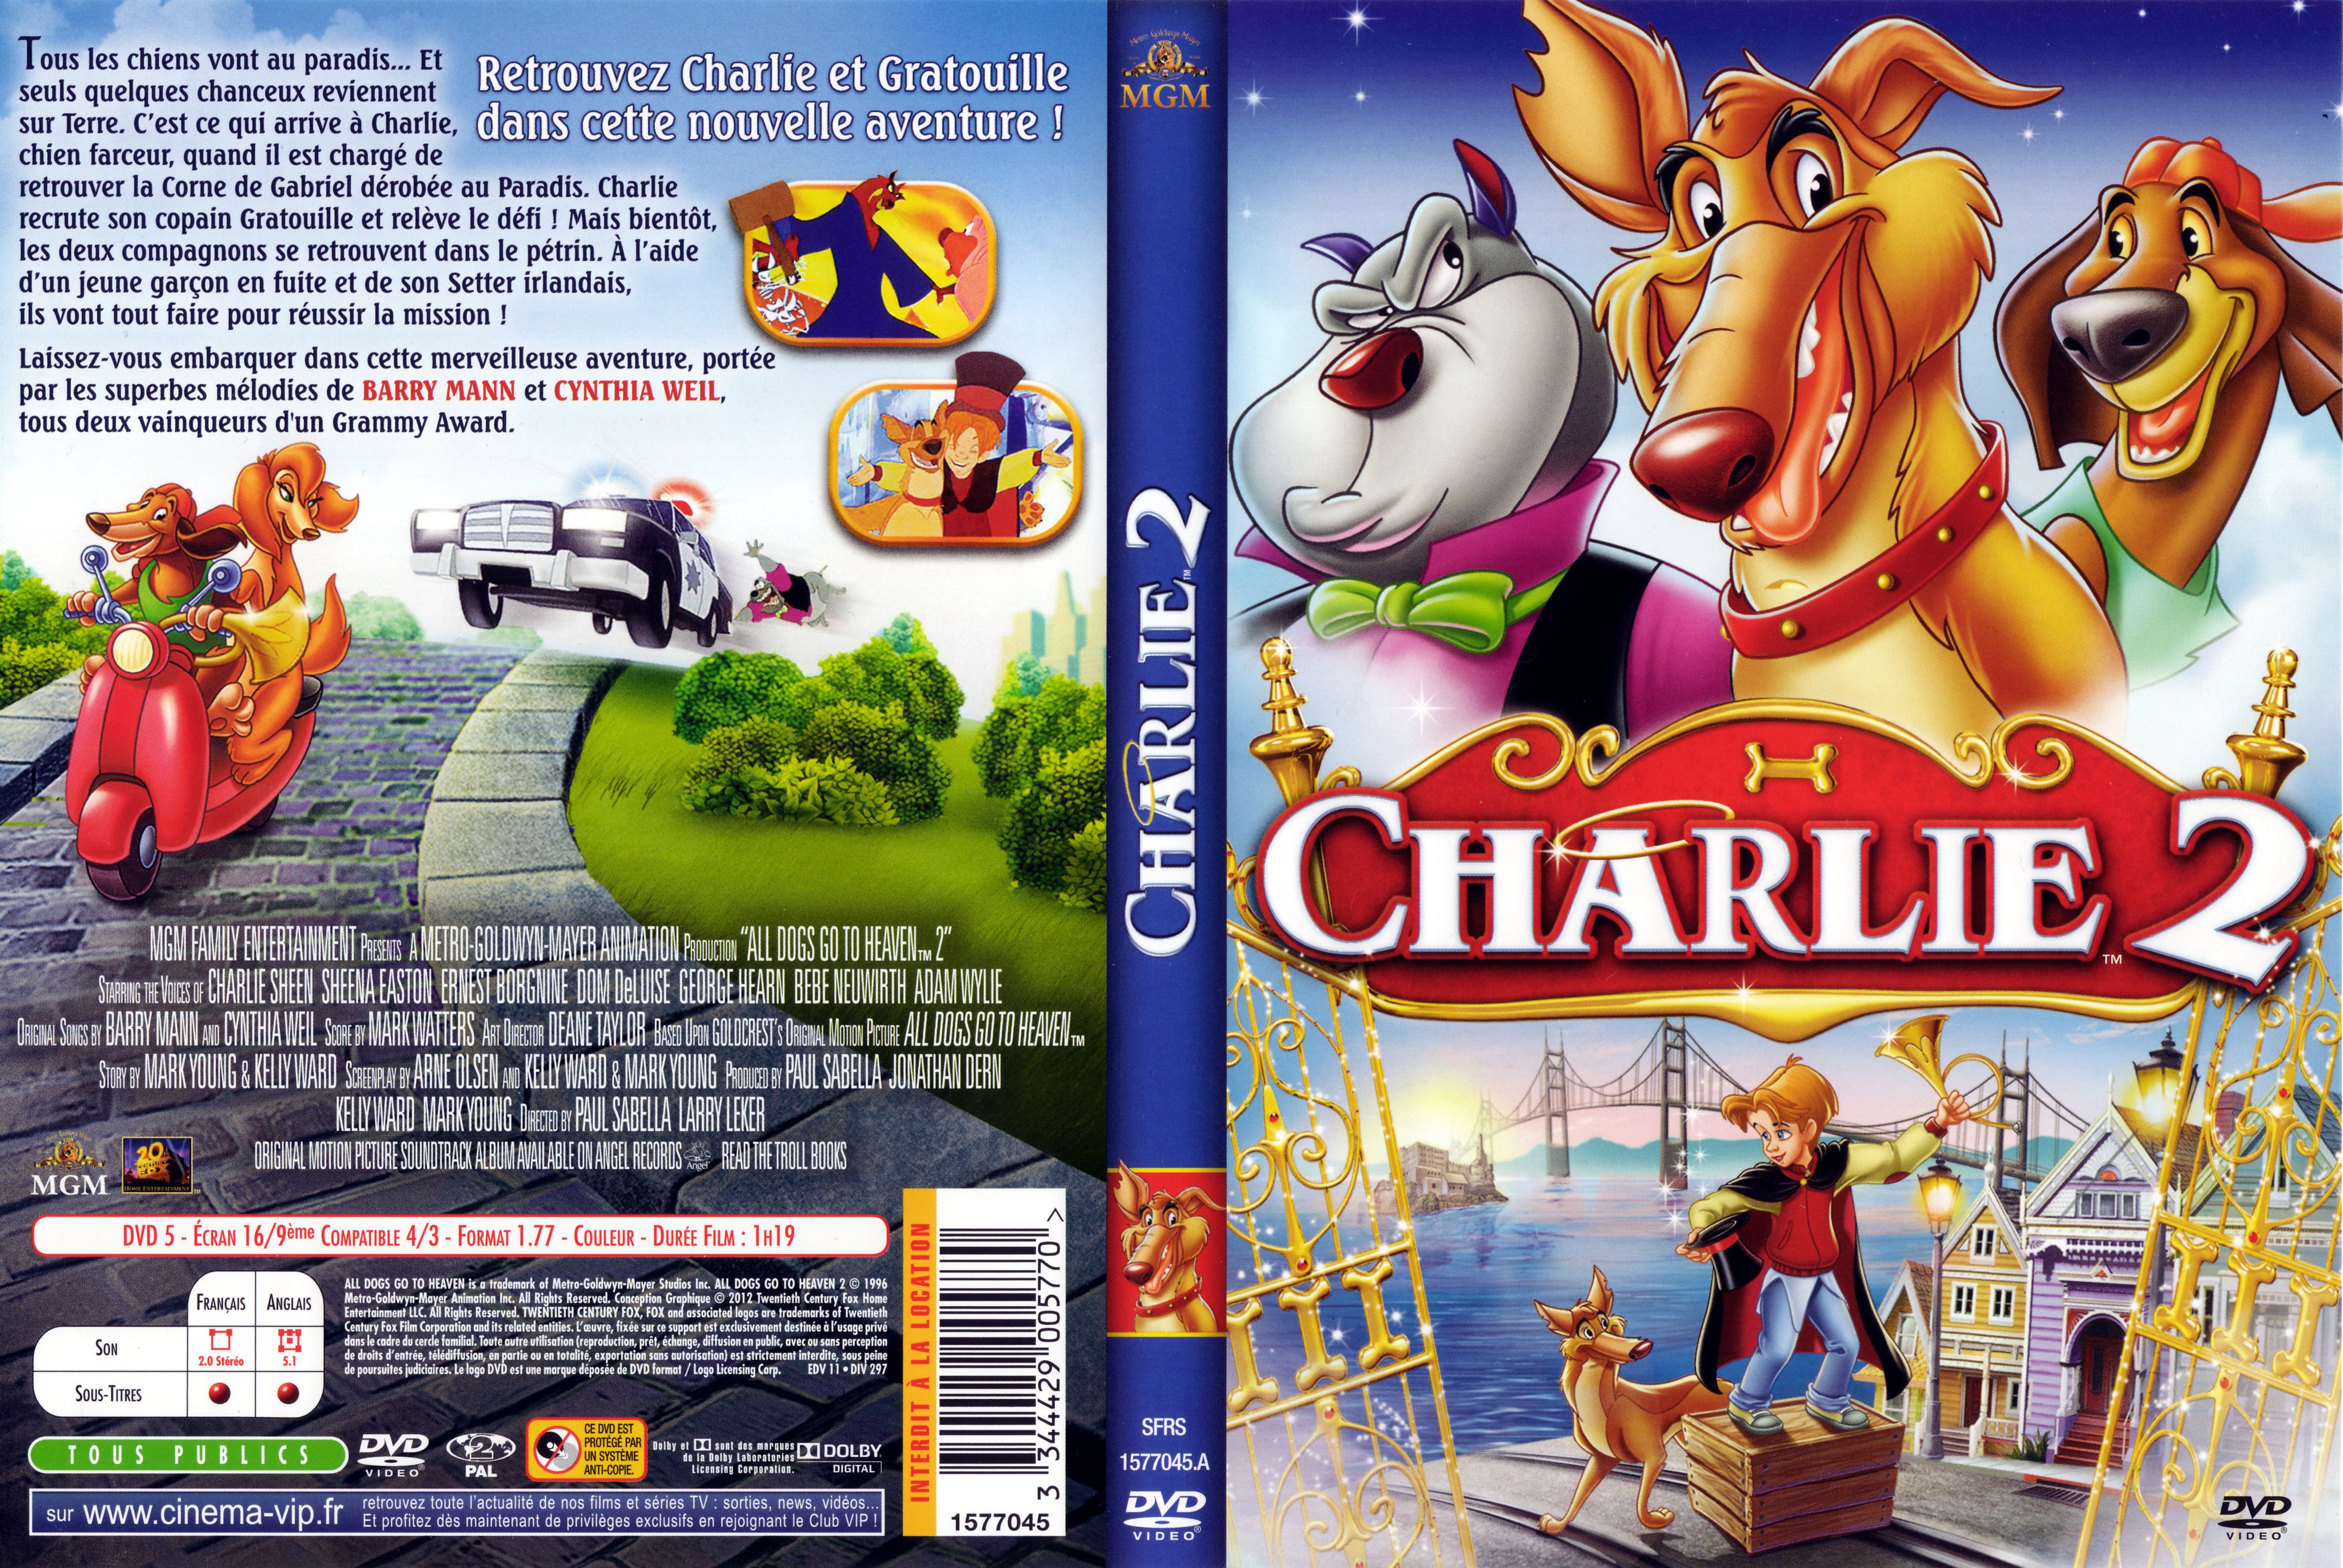 Jaquette DVD Charlie 2 v2